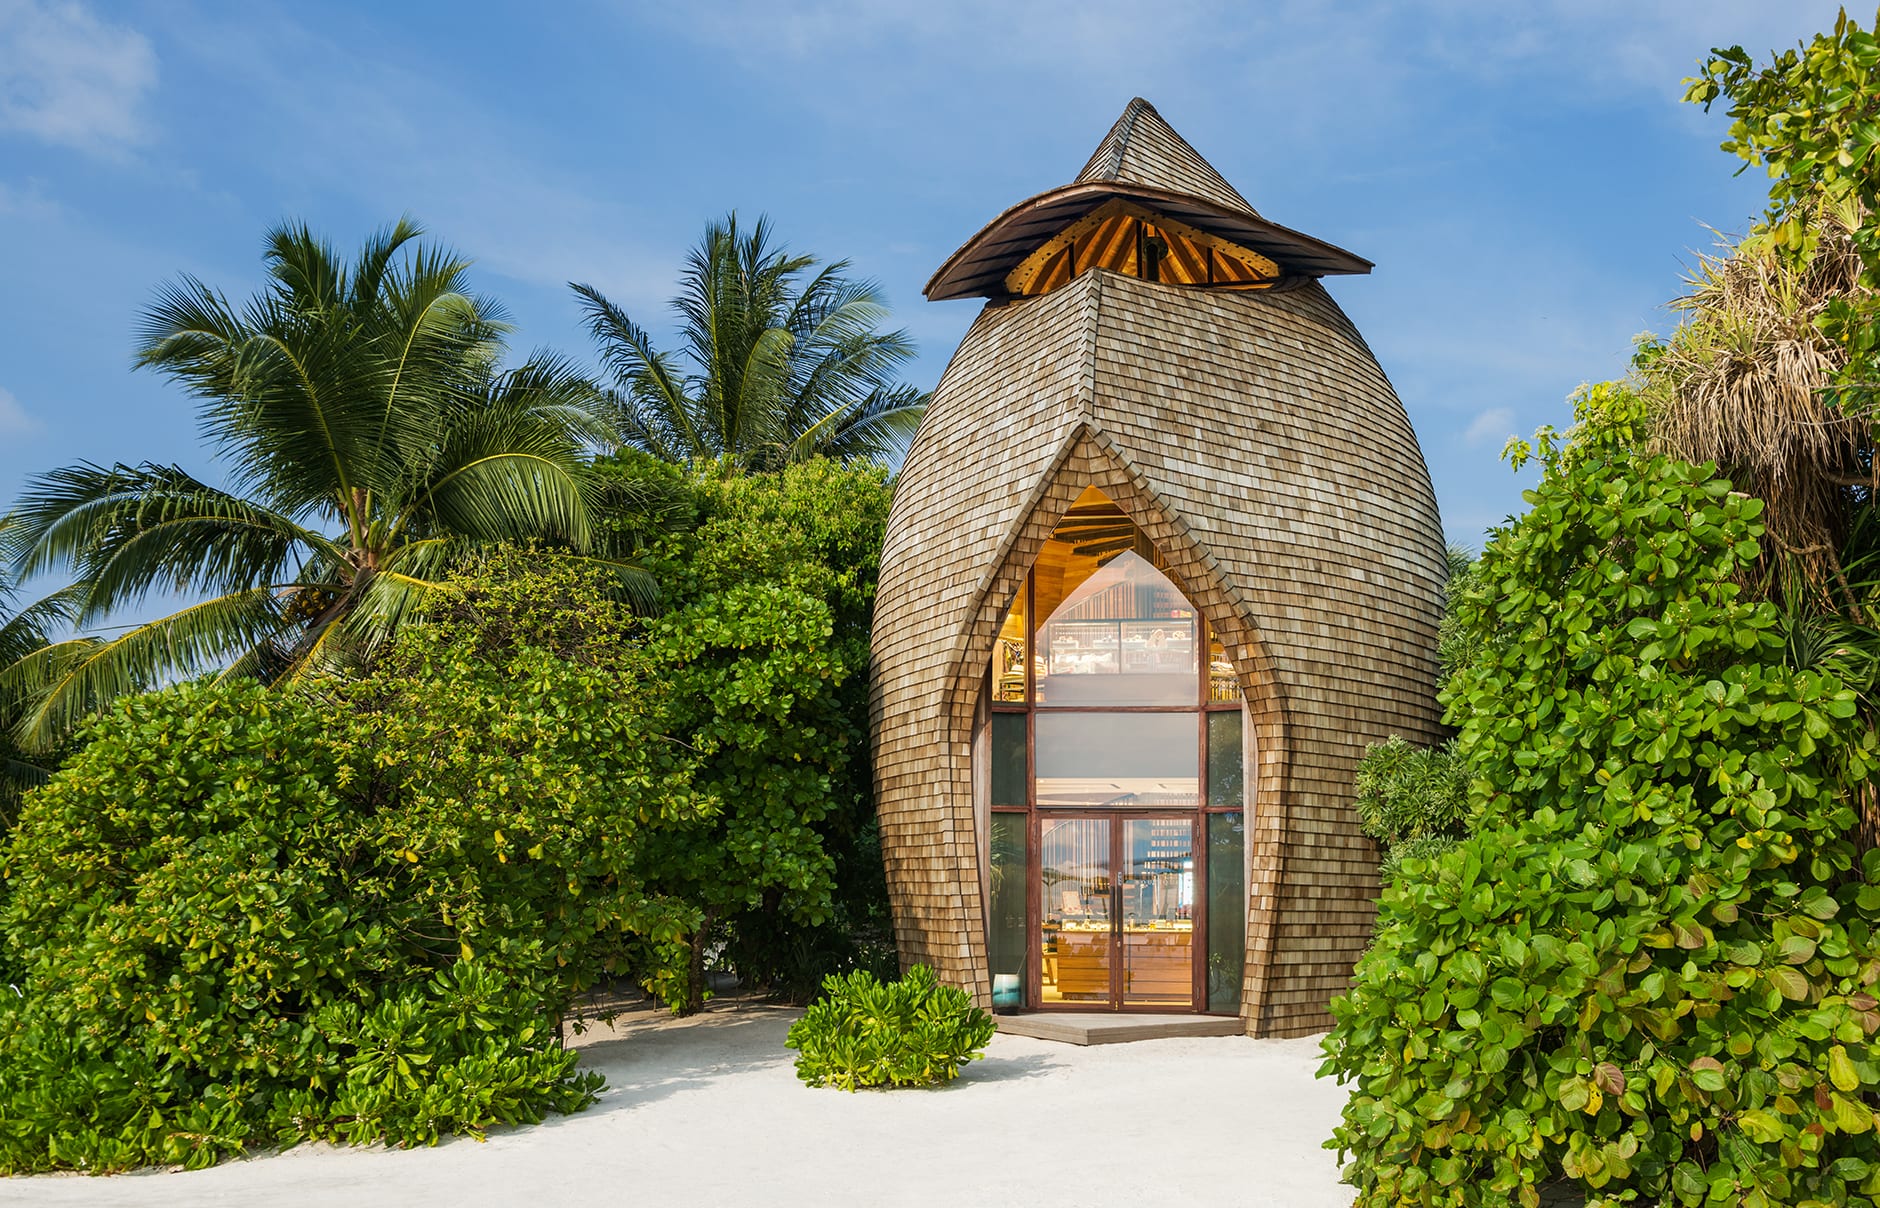 The St Regis Maldives Vommuli Resort Luxury Hotels Travelplusstyle